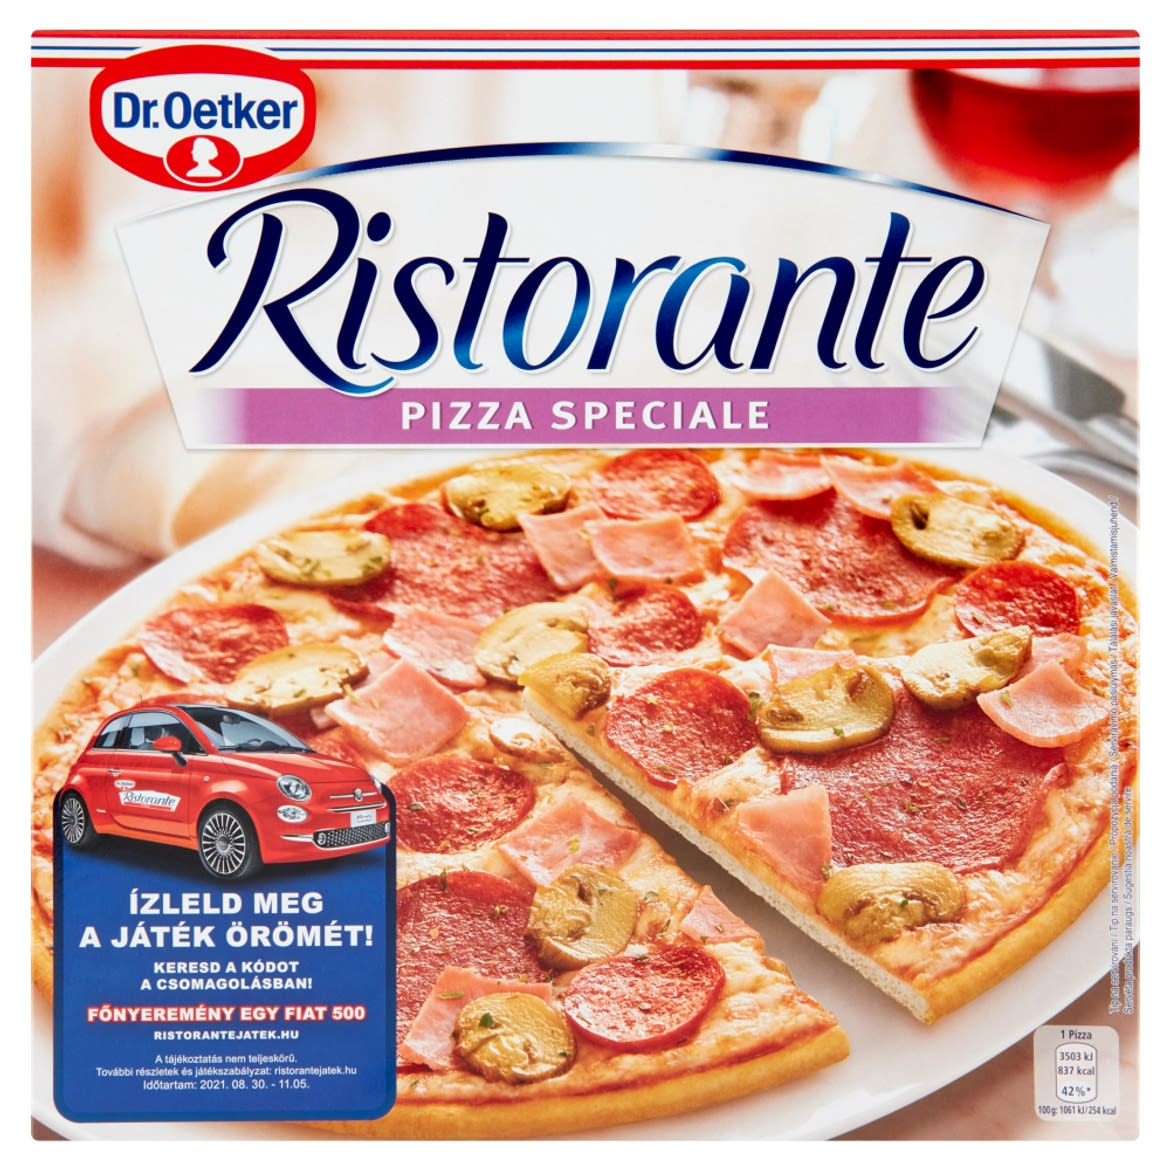 Dr. Oetker Ristorante Pizza Speciale gyorsfagyasztott pizza szalámival, gombával és sonkával